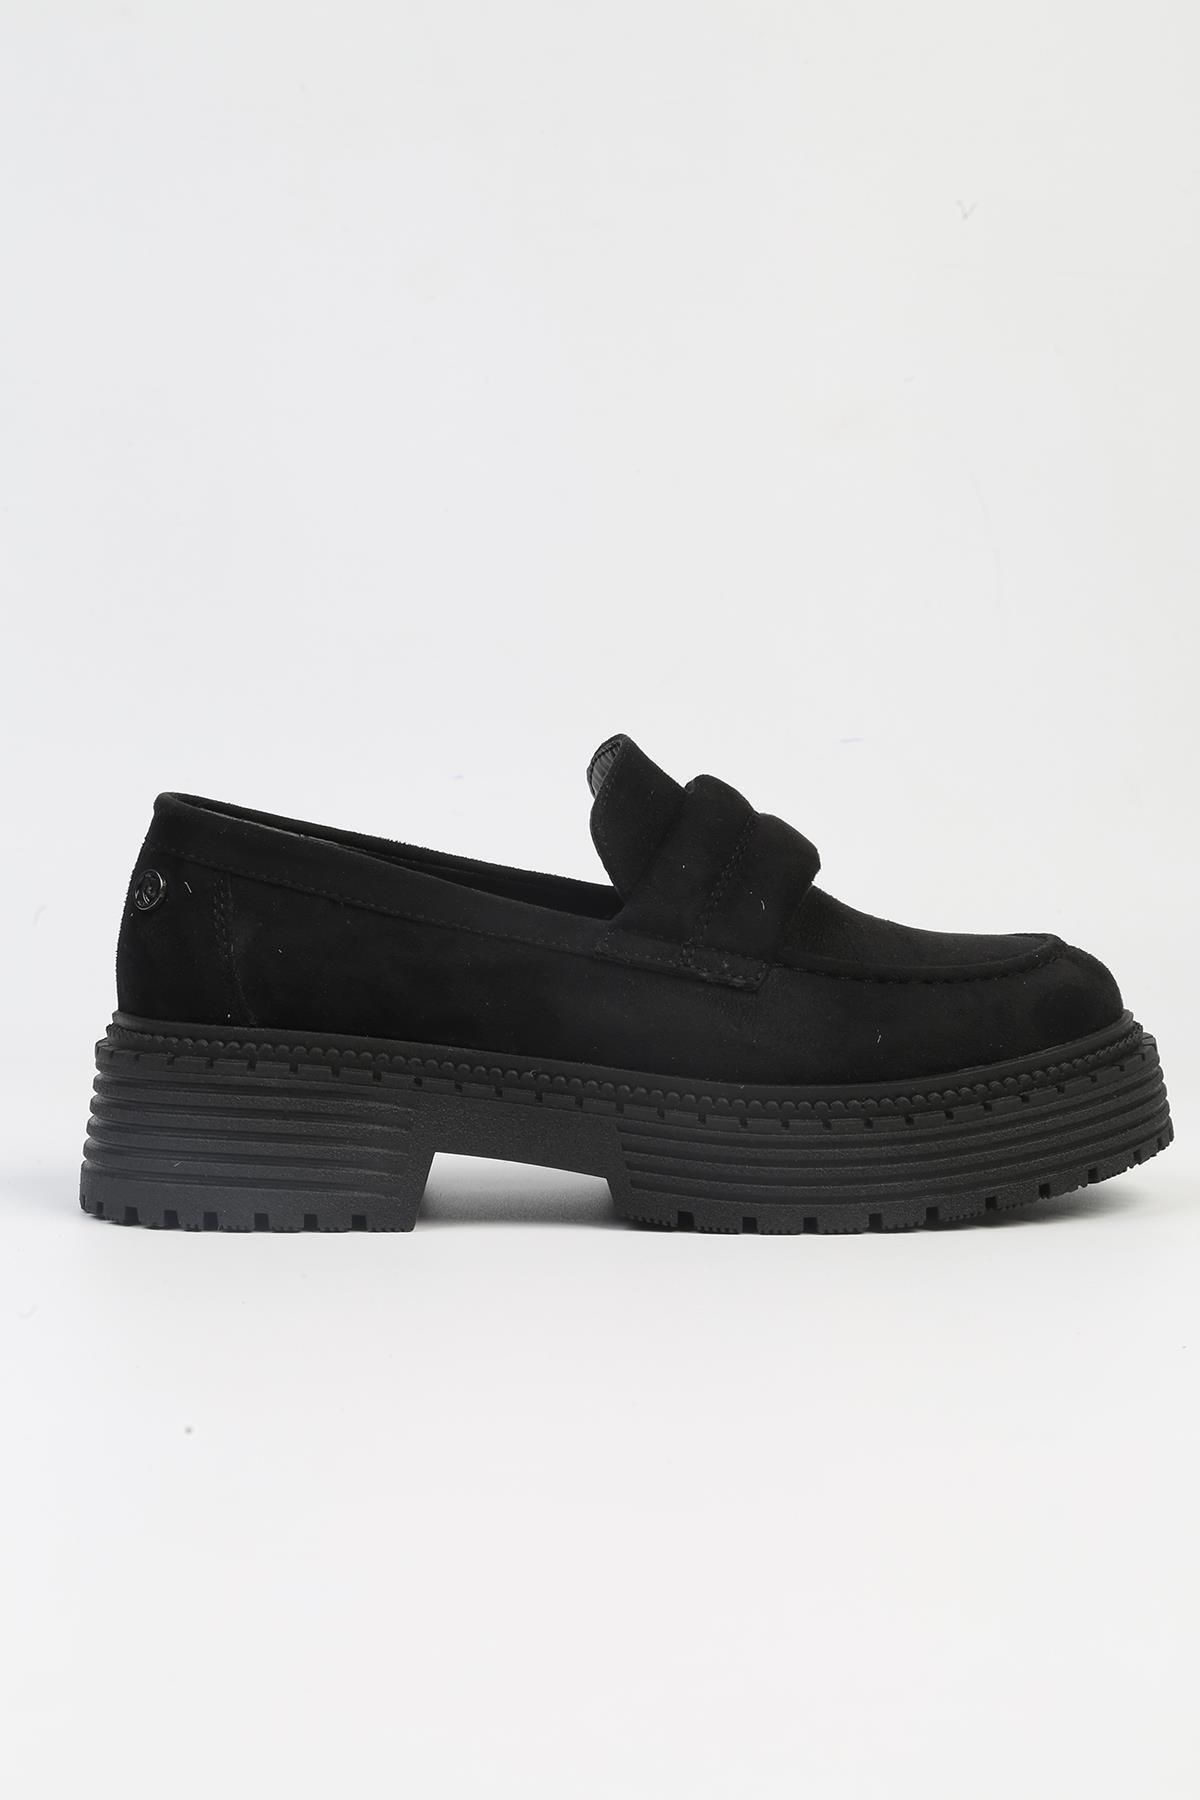 Pierre Cardin ® | PC-52433-3076 Süet Siyah-Kadın Loafer Günlük Ayakkabı